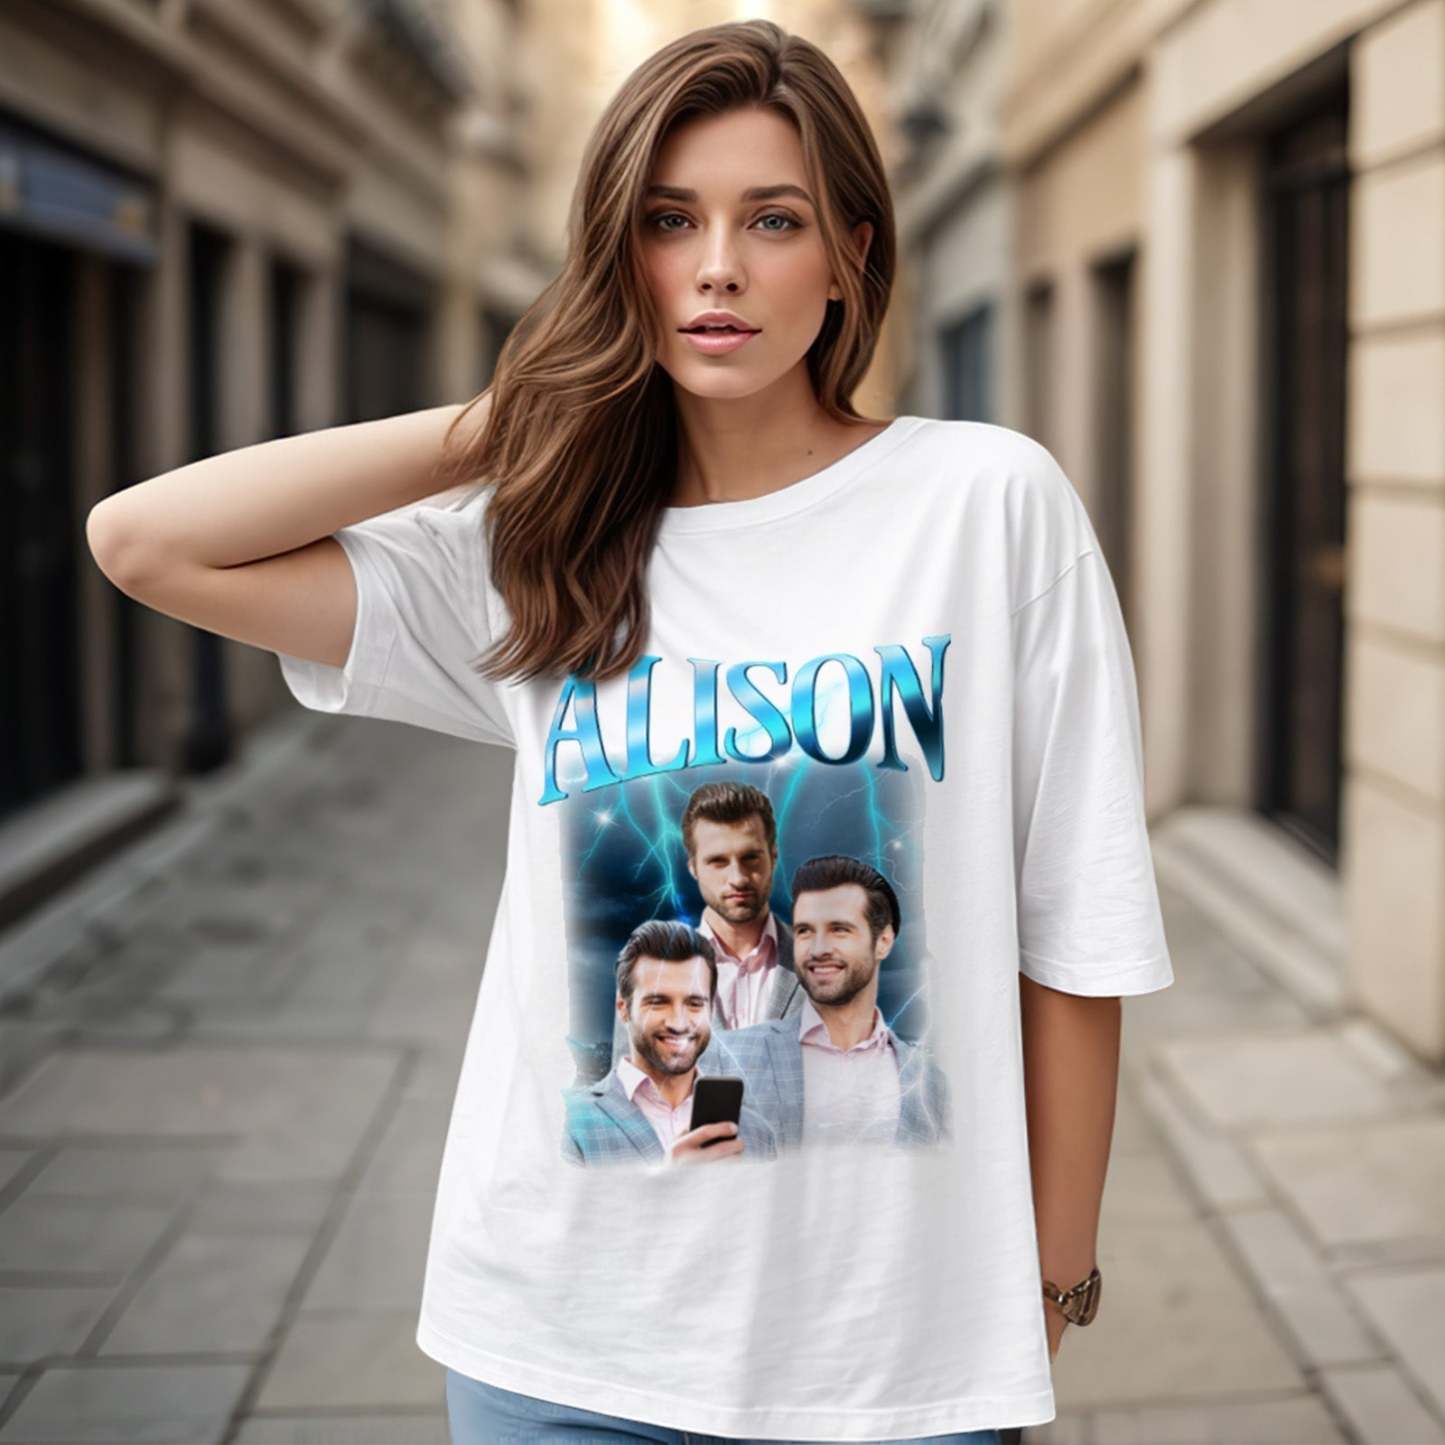 T-shirt Personnalisé Avec Photo Et Nom Rétro Lightning, Cadeau Spécial Pour Couple - MaPhotocaleconFr